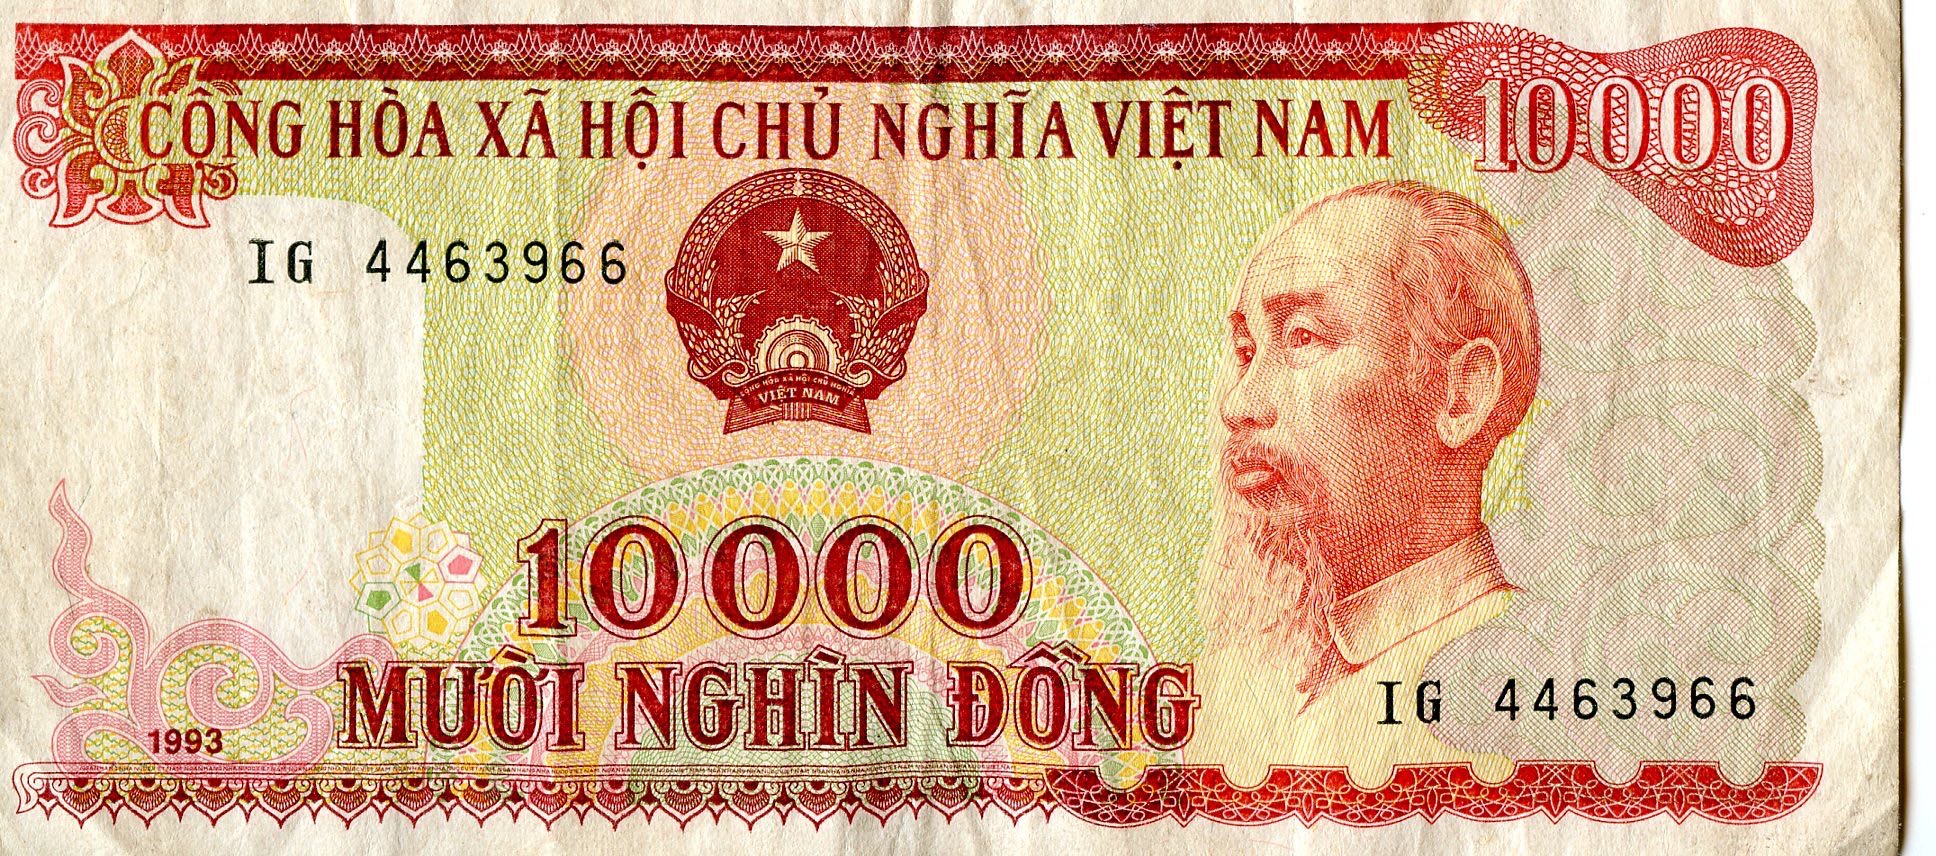 Währung in Vietnam